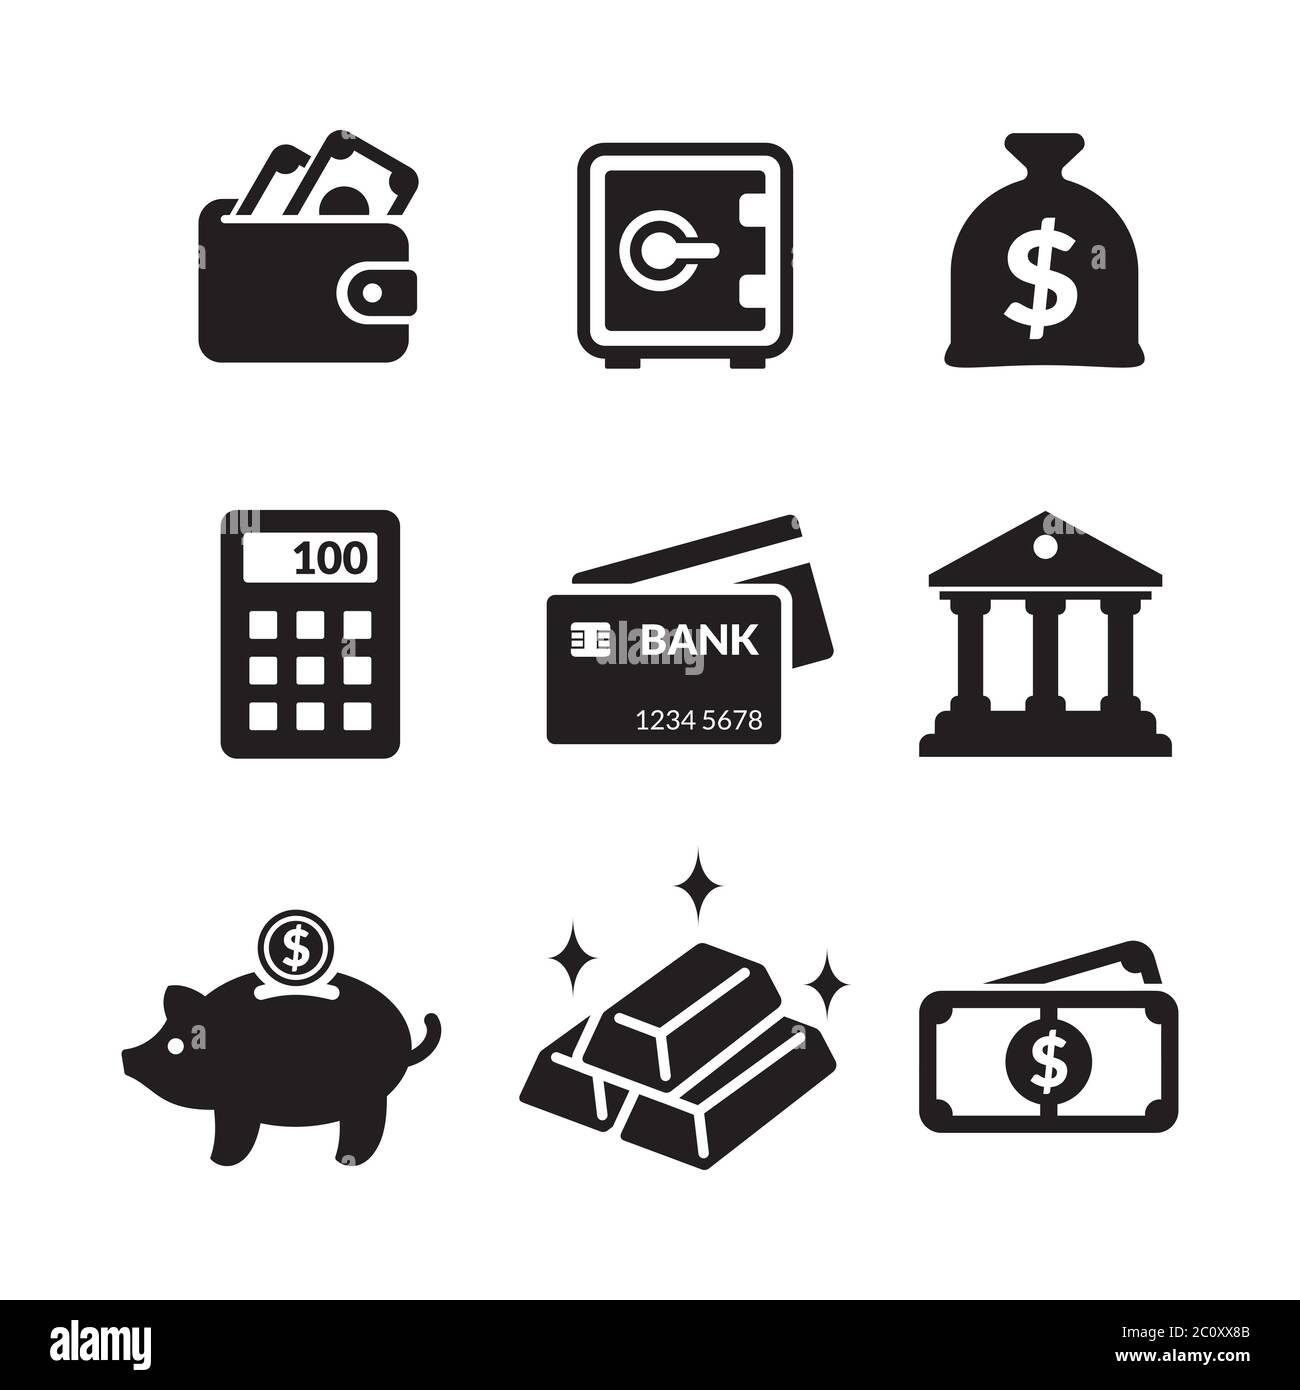 Eine Sammlung von Symbolen für Banken und Wirtschaftsaktivitäten. Kreditkarte, Geld, Rechner und mehr. Einfache flache Bankfinanzierung Icon-Set. Stock Vektor